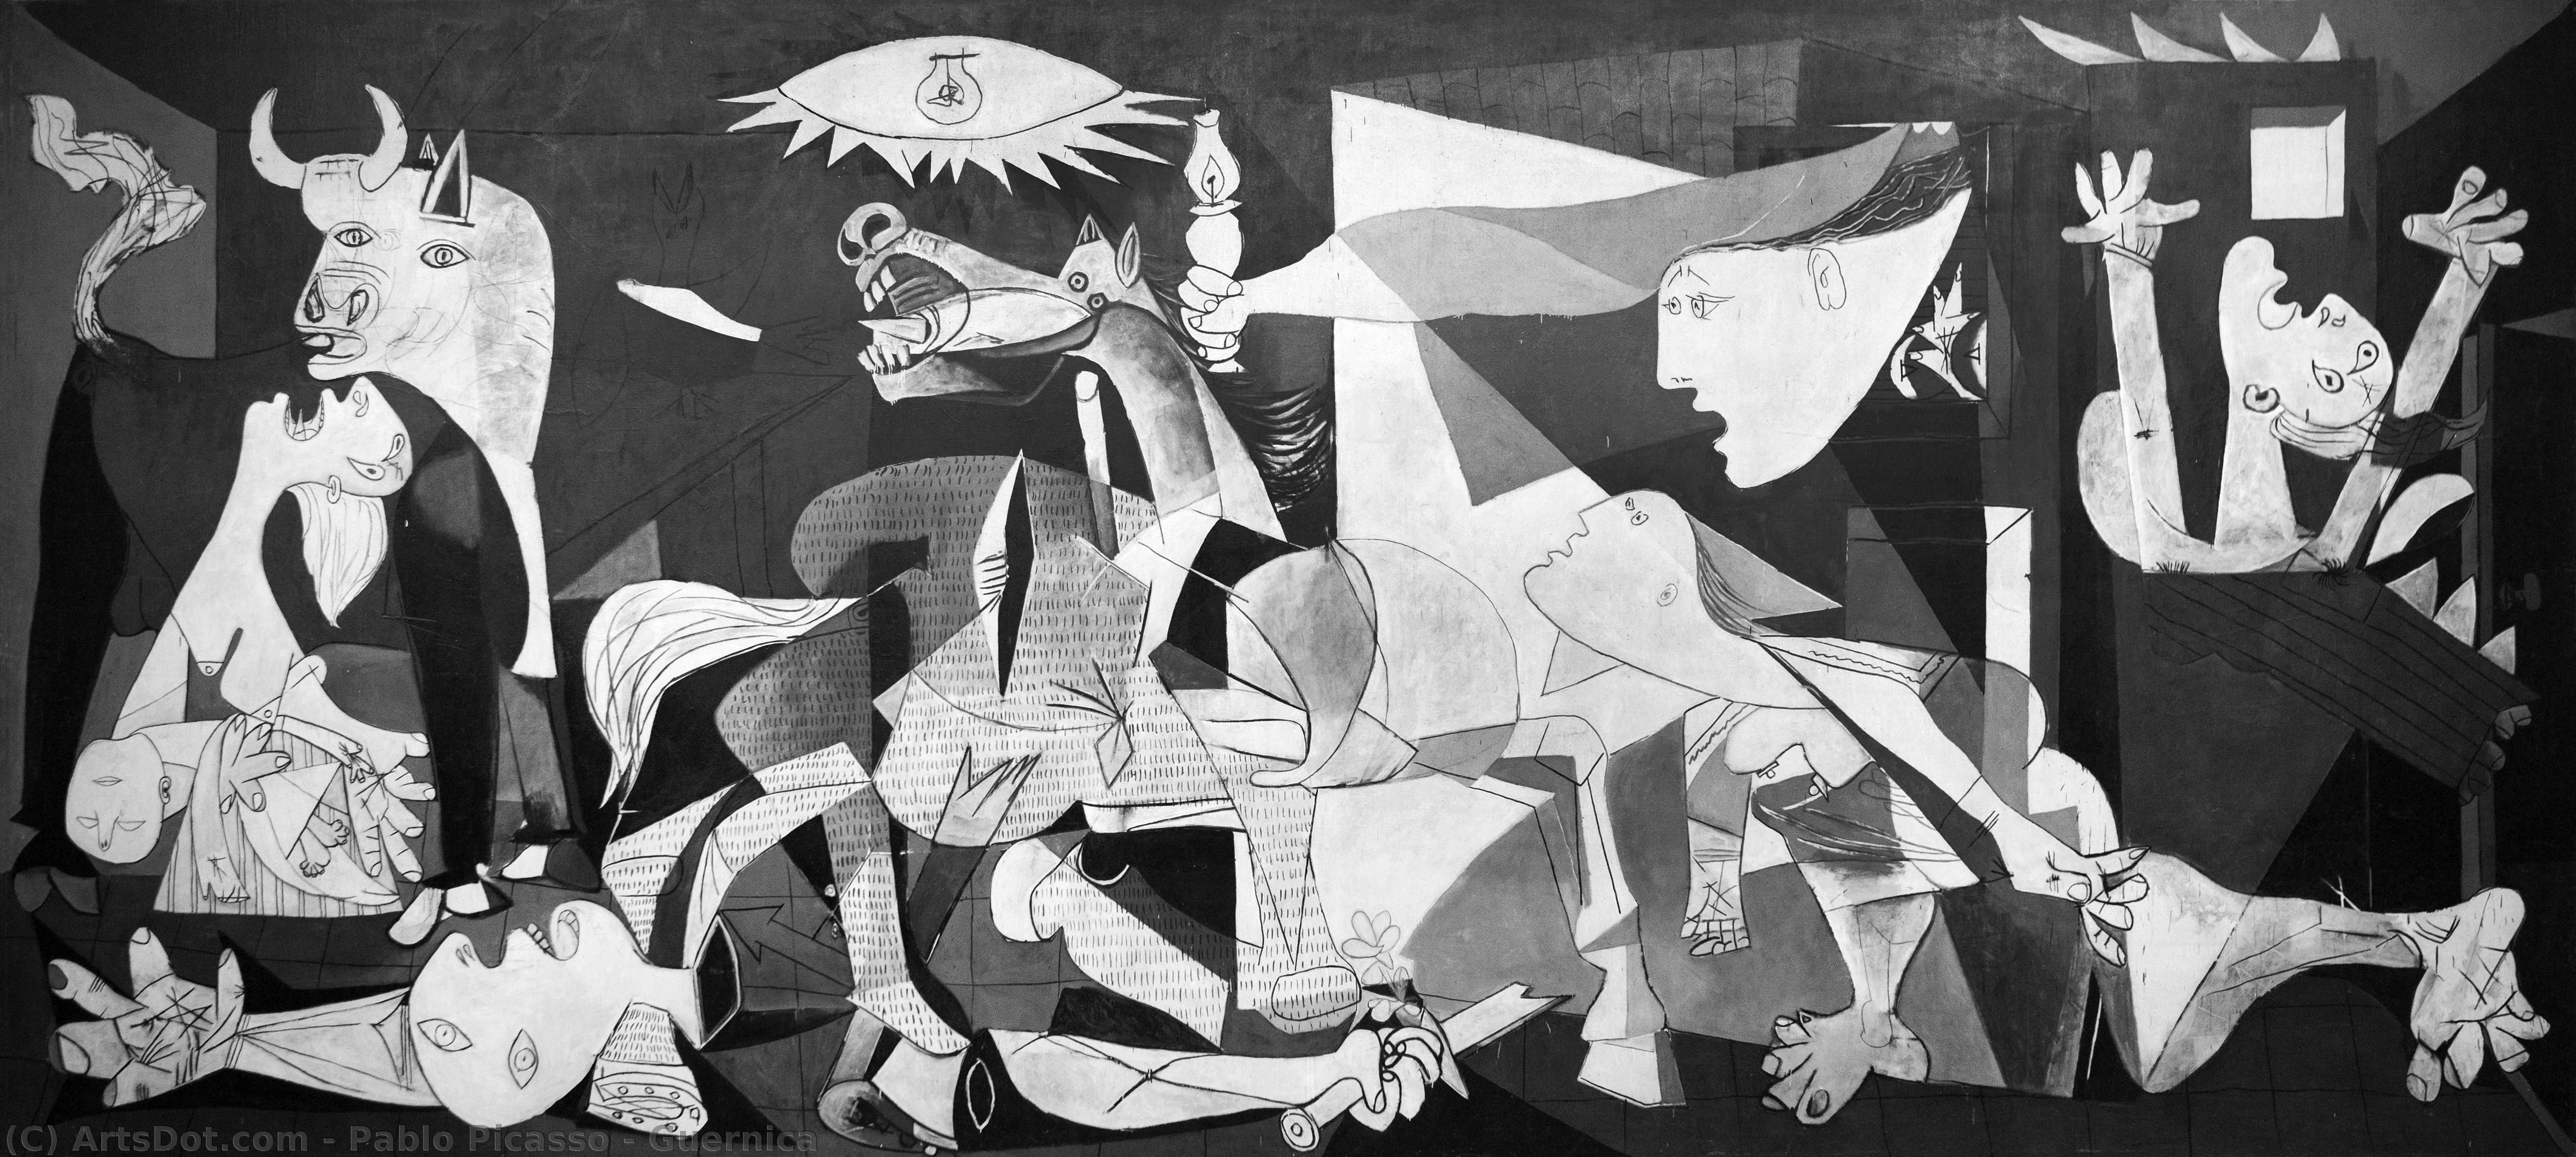 Wikoo.org - موسوعة الفنون الجميلة - اللوحة، العمل الفني Pablo Picasso - Guernica